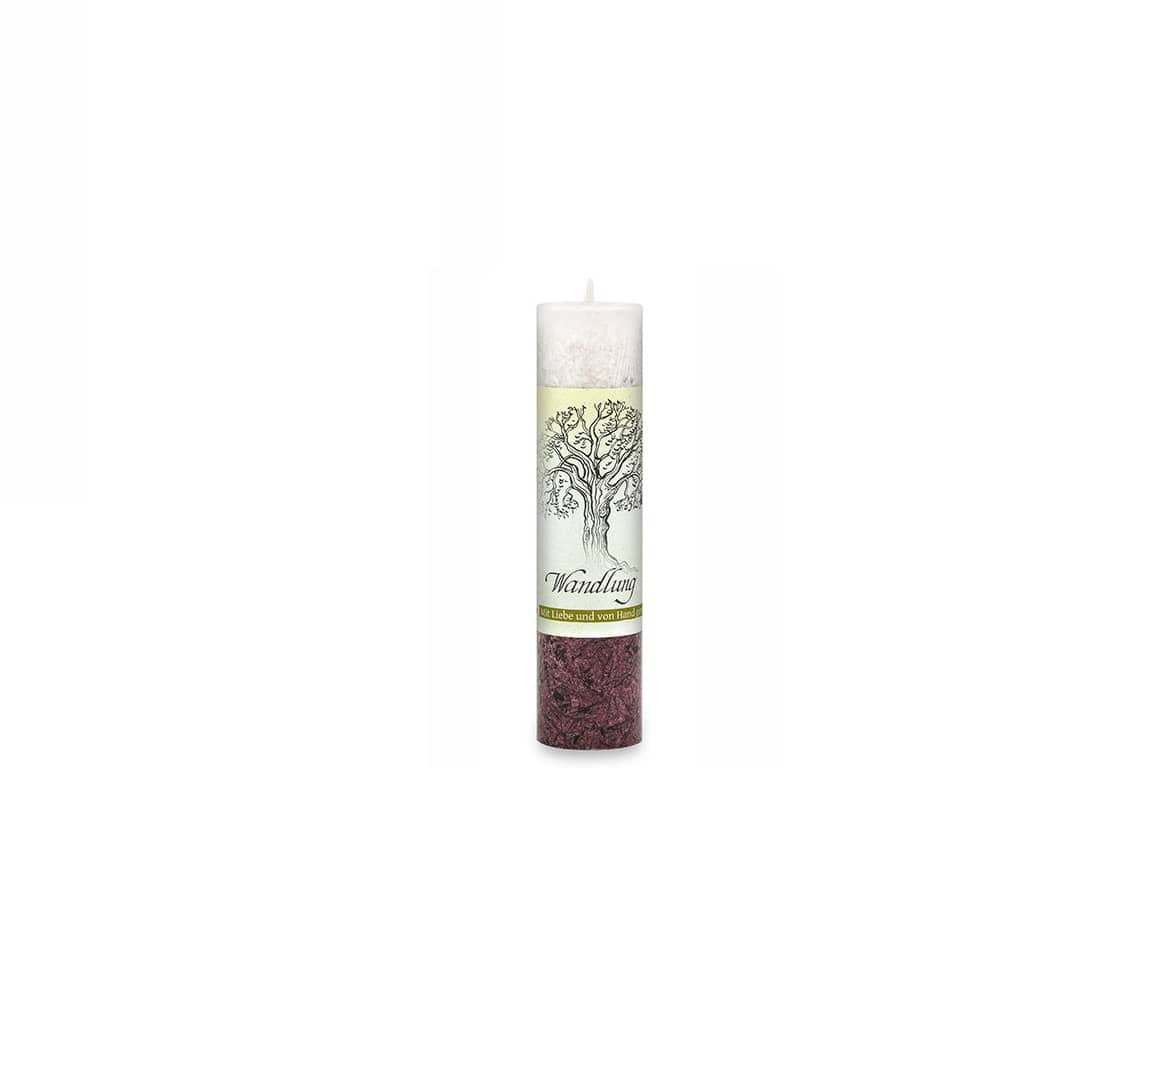 Geist der Bäume Allgäuer Heilkräuter Kerzen ist eine tolle Geschenkidee. im Onlineshop kaufen